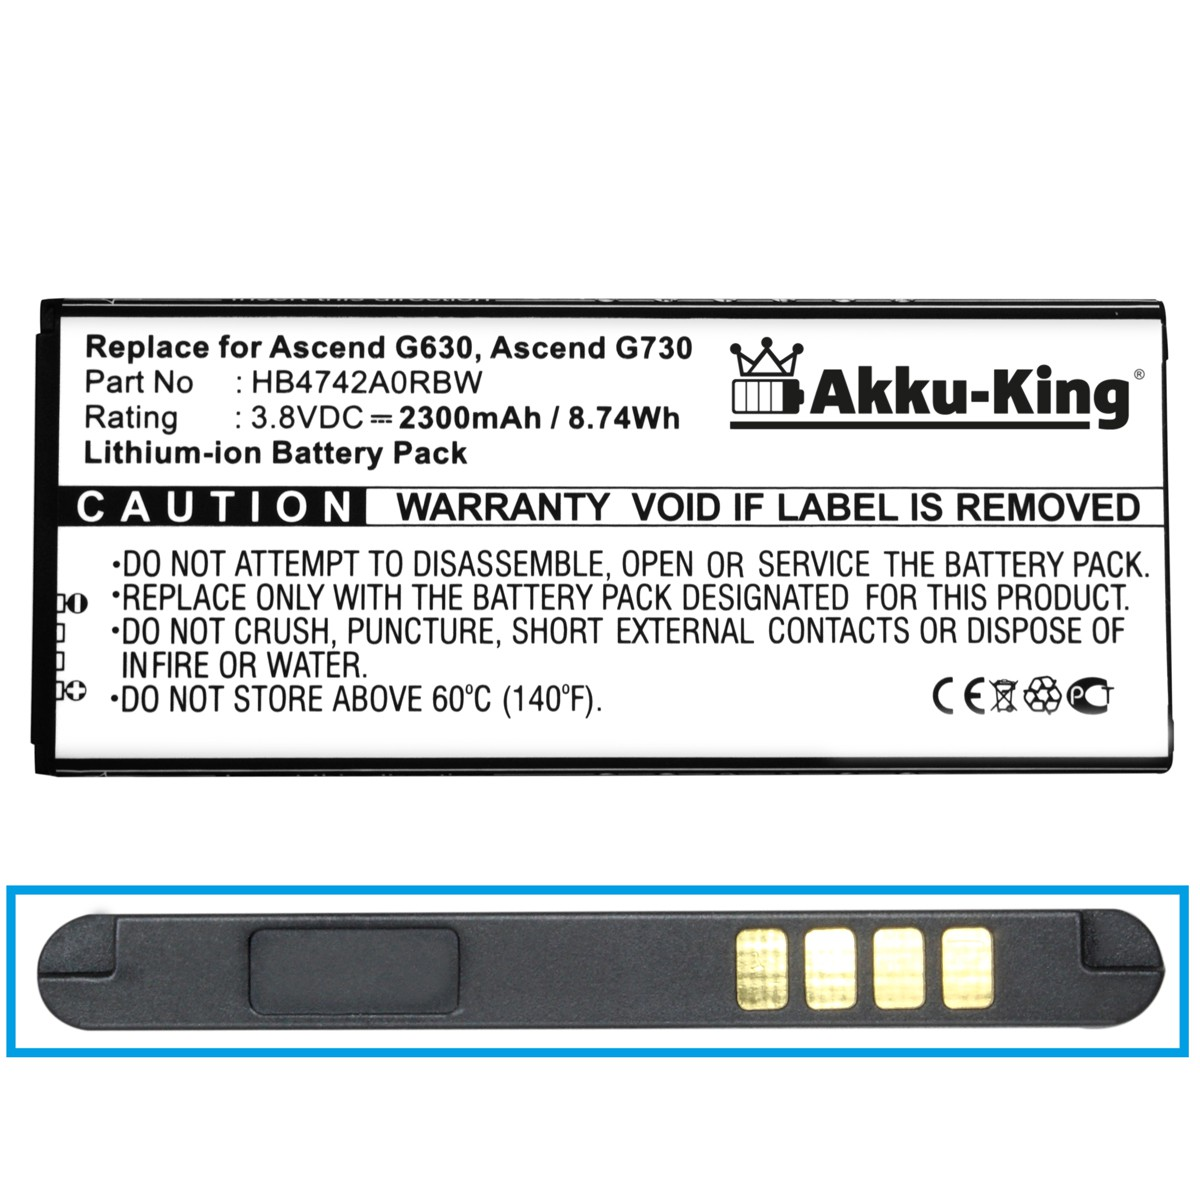 AKKU-KING Akku kompatibel Li-Ion 2300mAh Handy-Akku, Volt, HB4742A0RBC mit Huawei 3.8